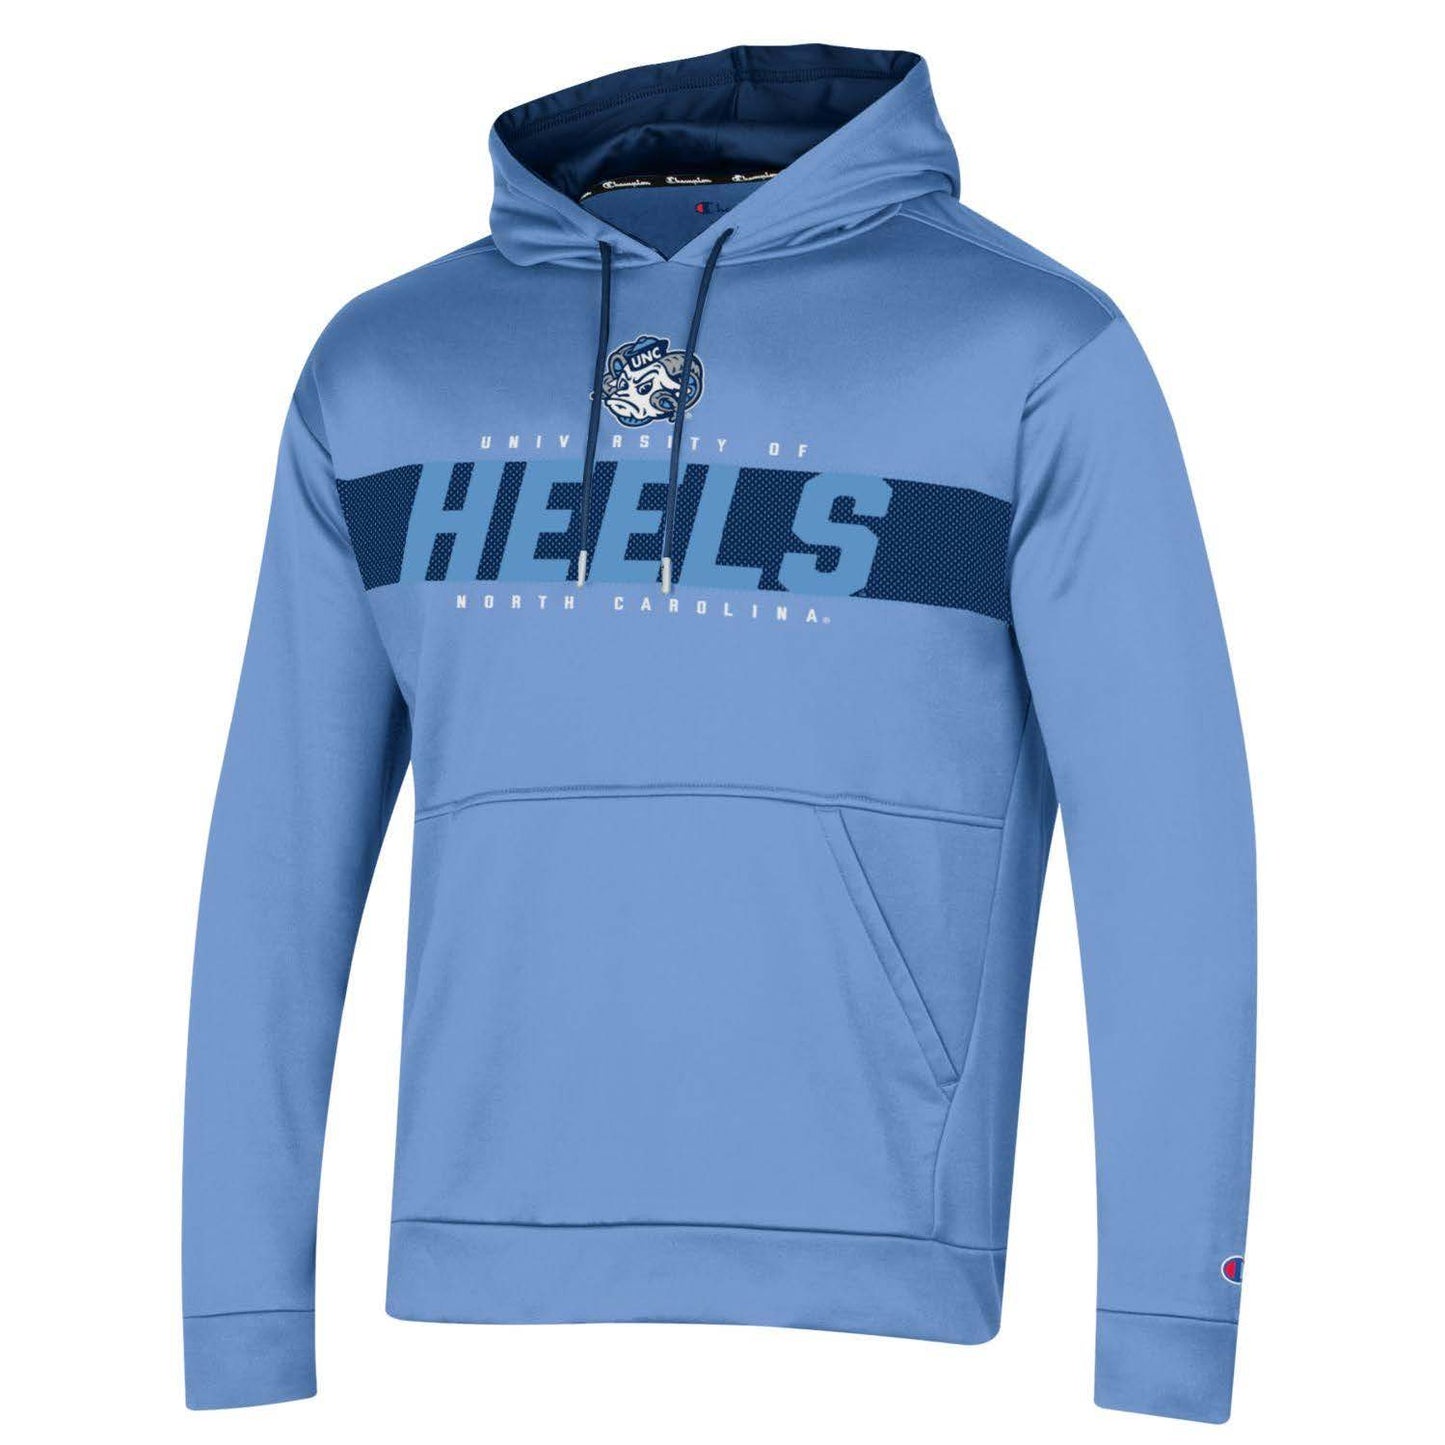 UNC HEELS Men's Athletic Hoodie by Champion in Blue